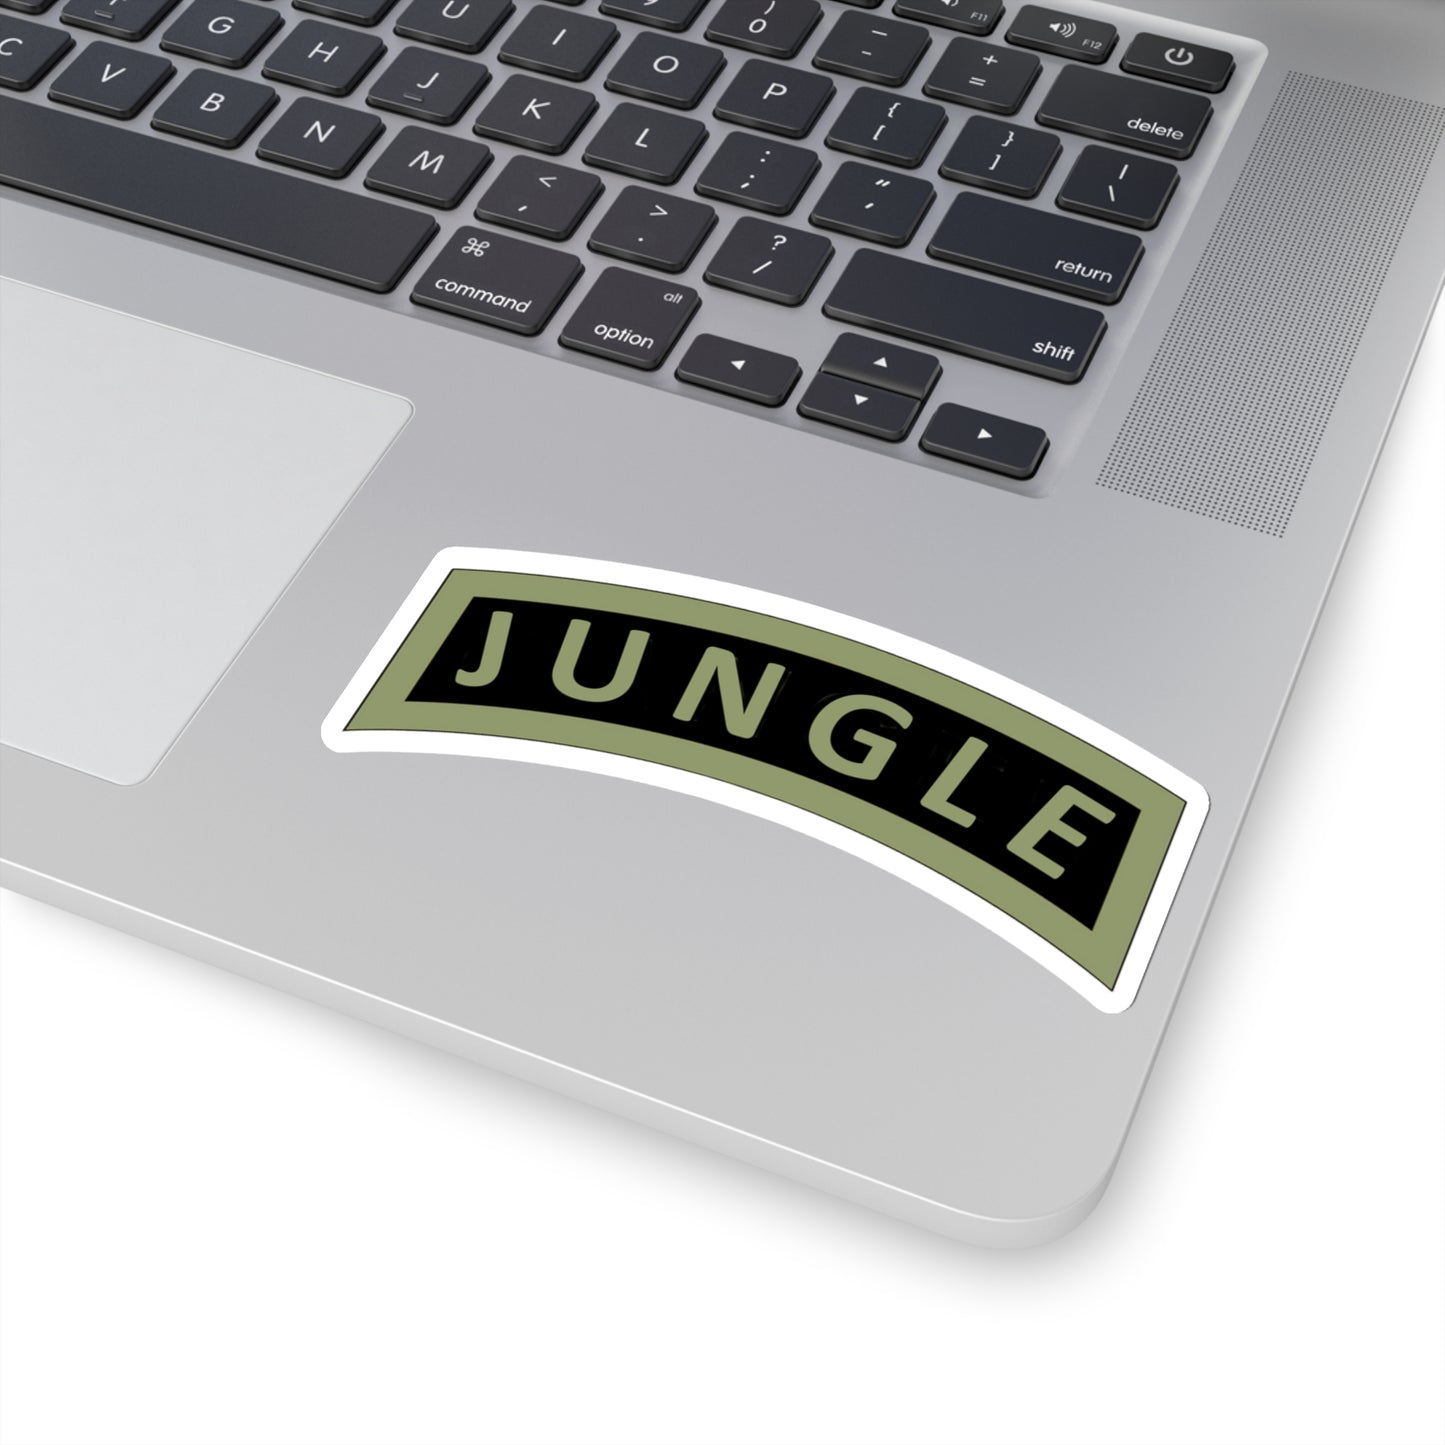 LA Jungle Tab Sticker